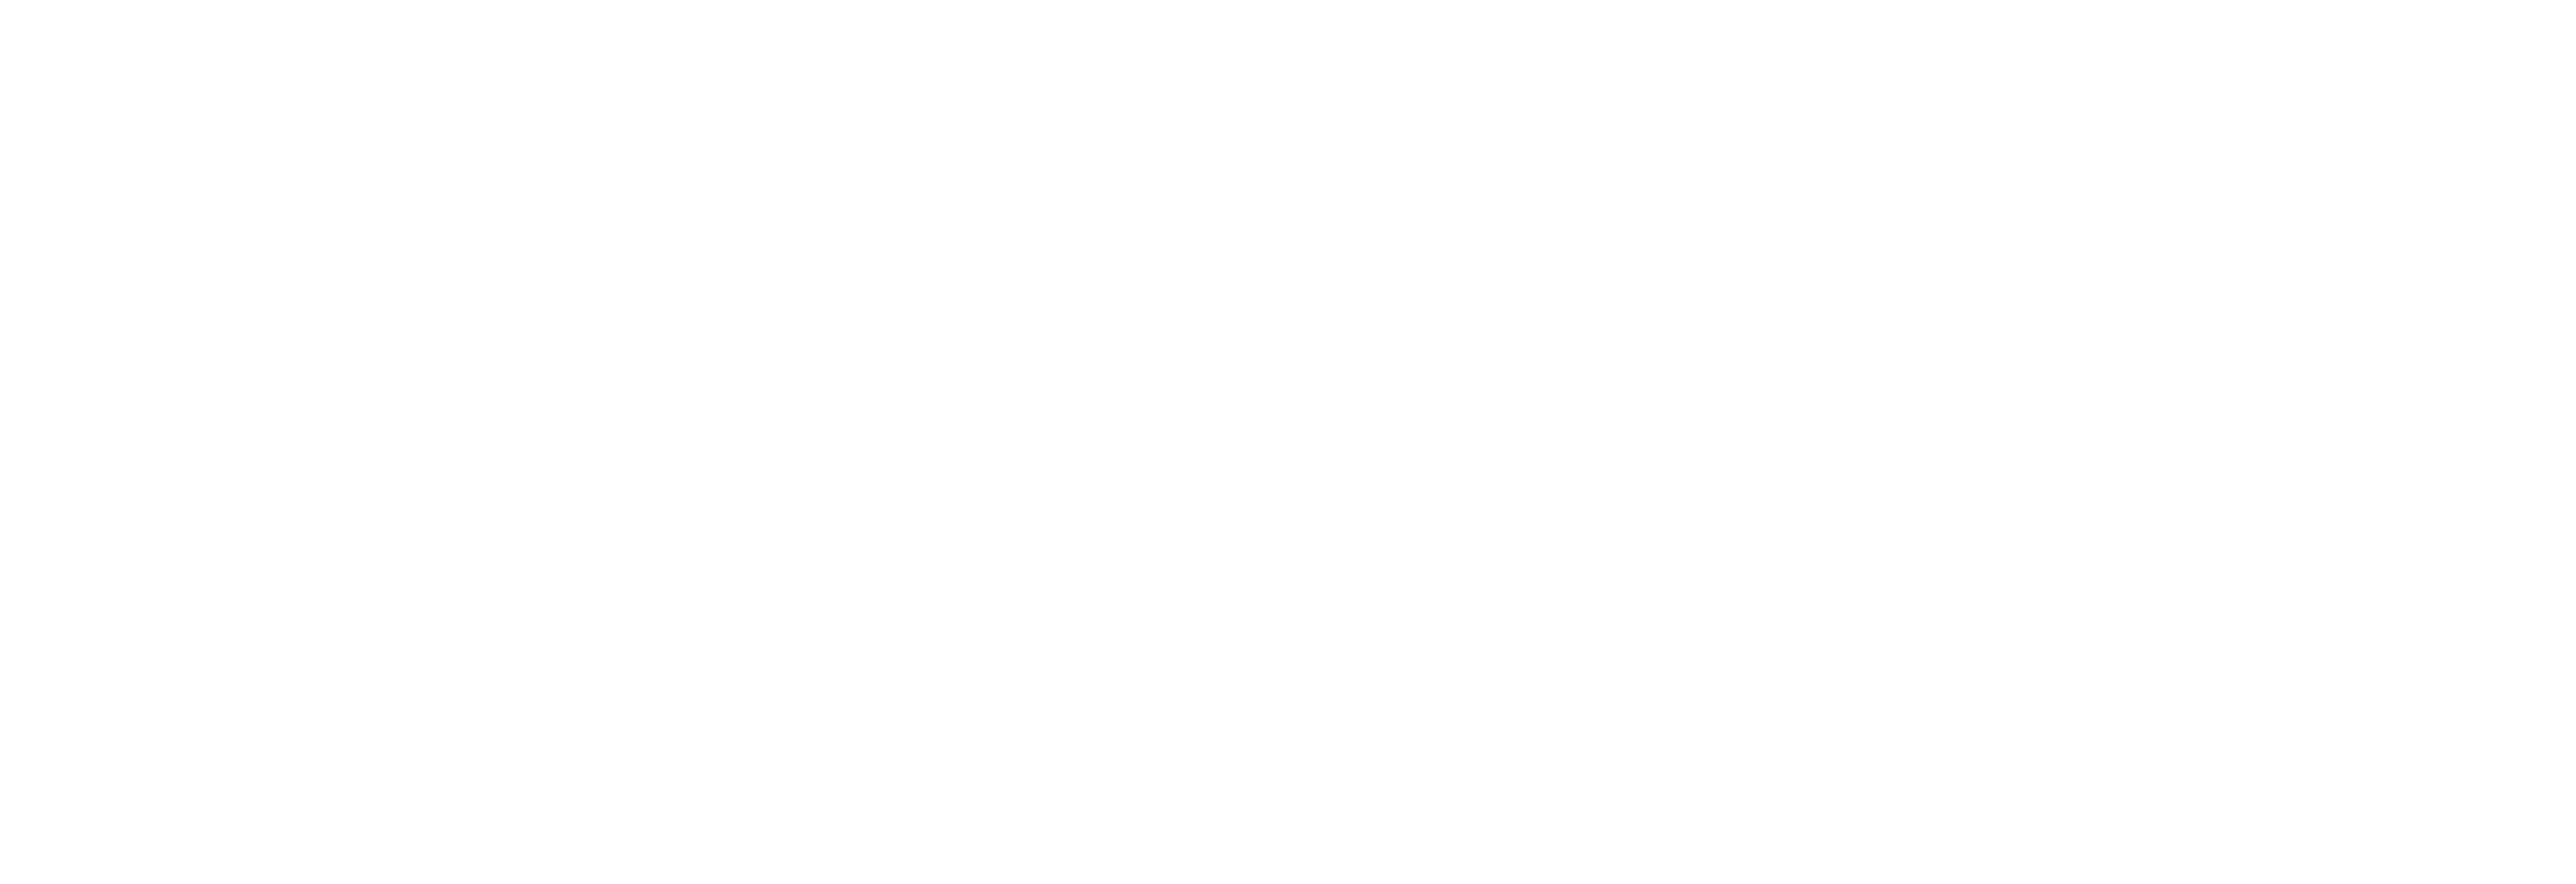 Digipeak - Logo-White